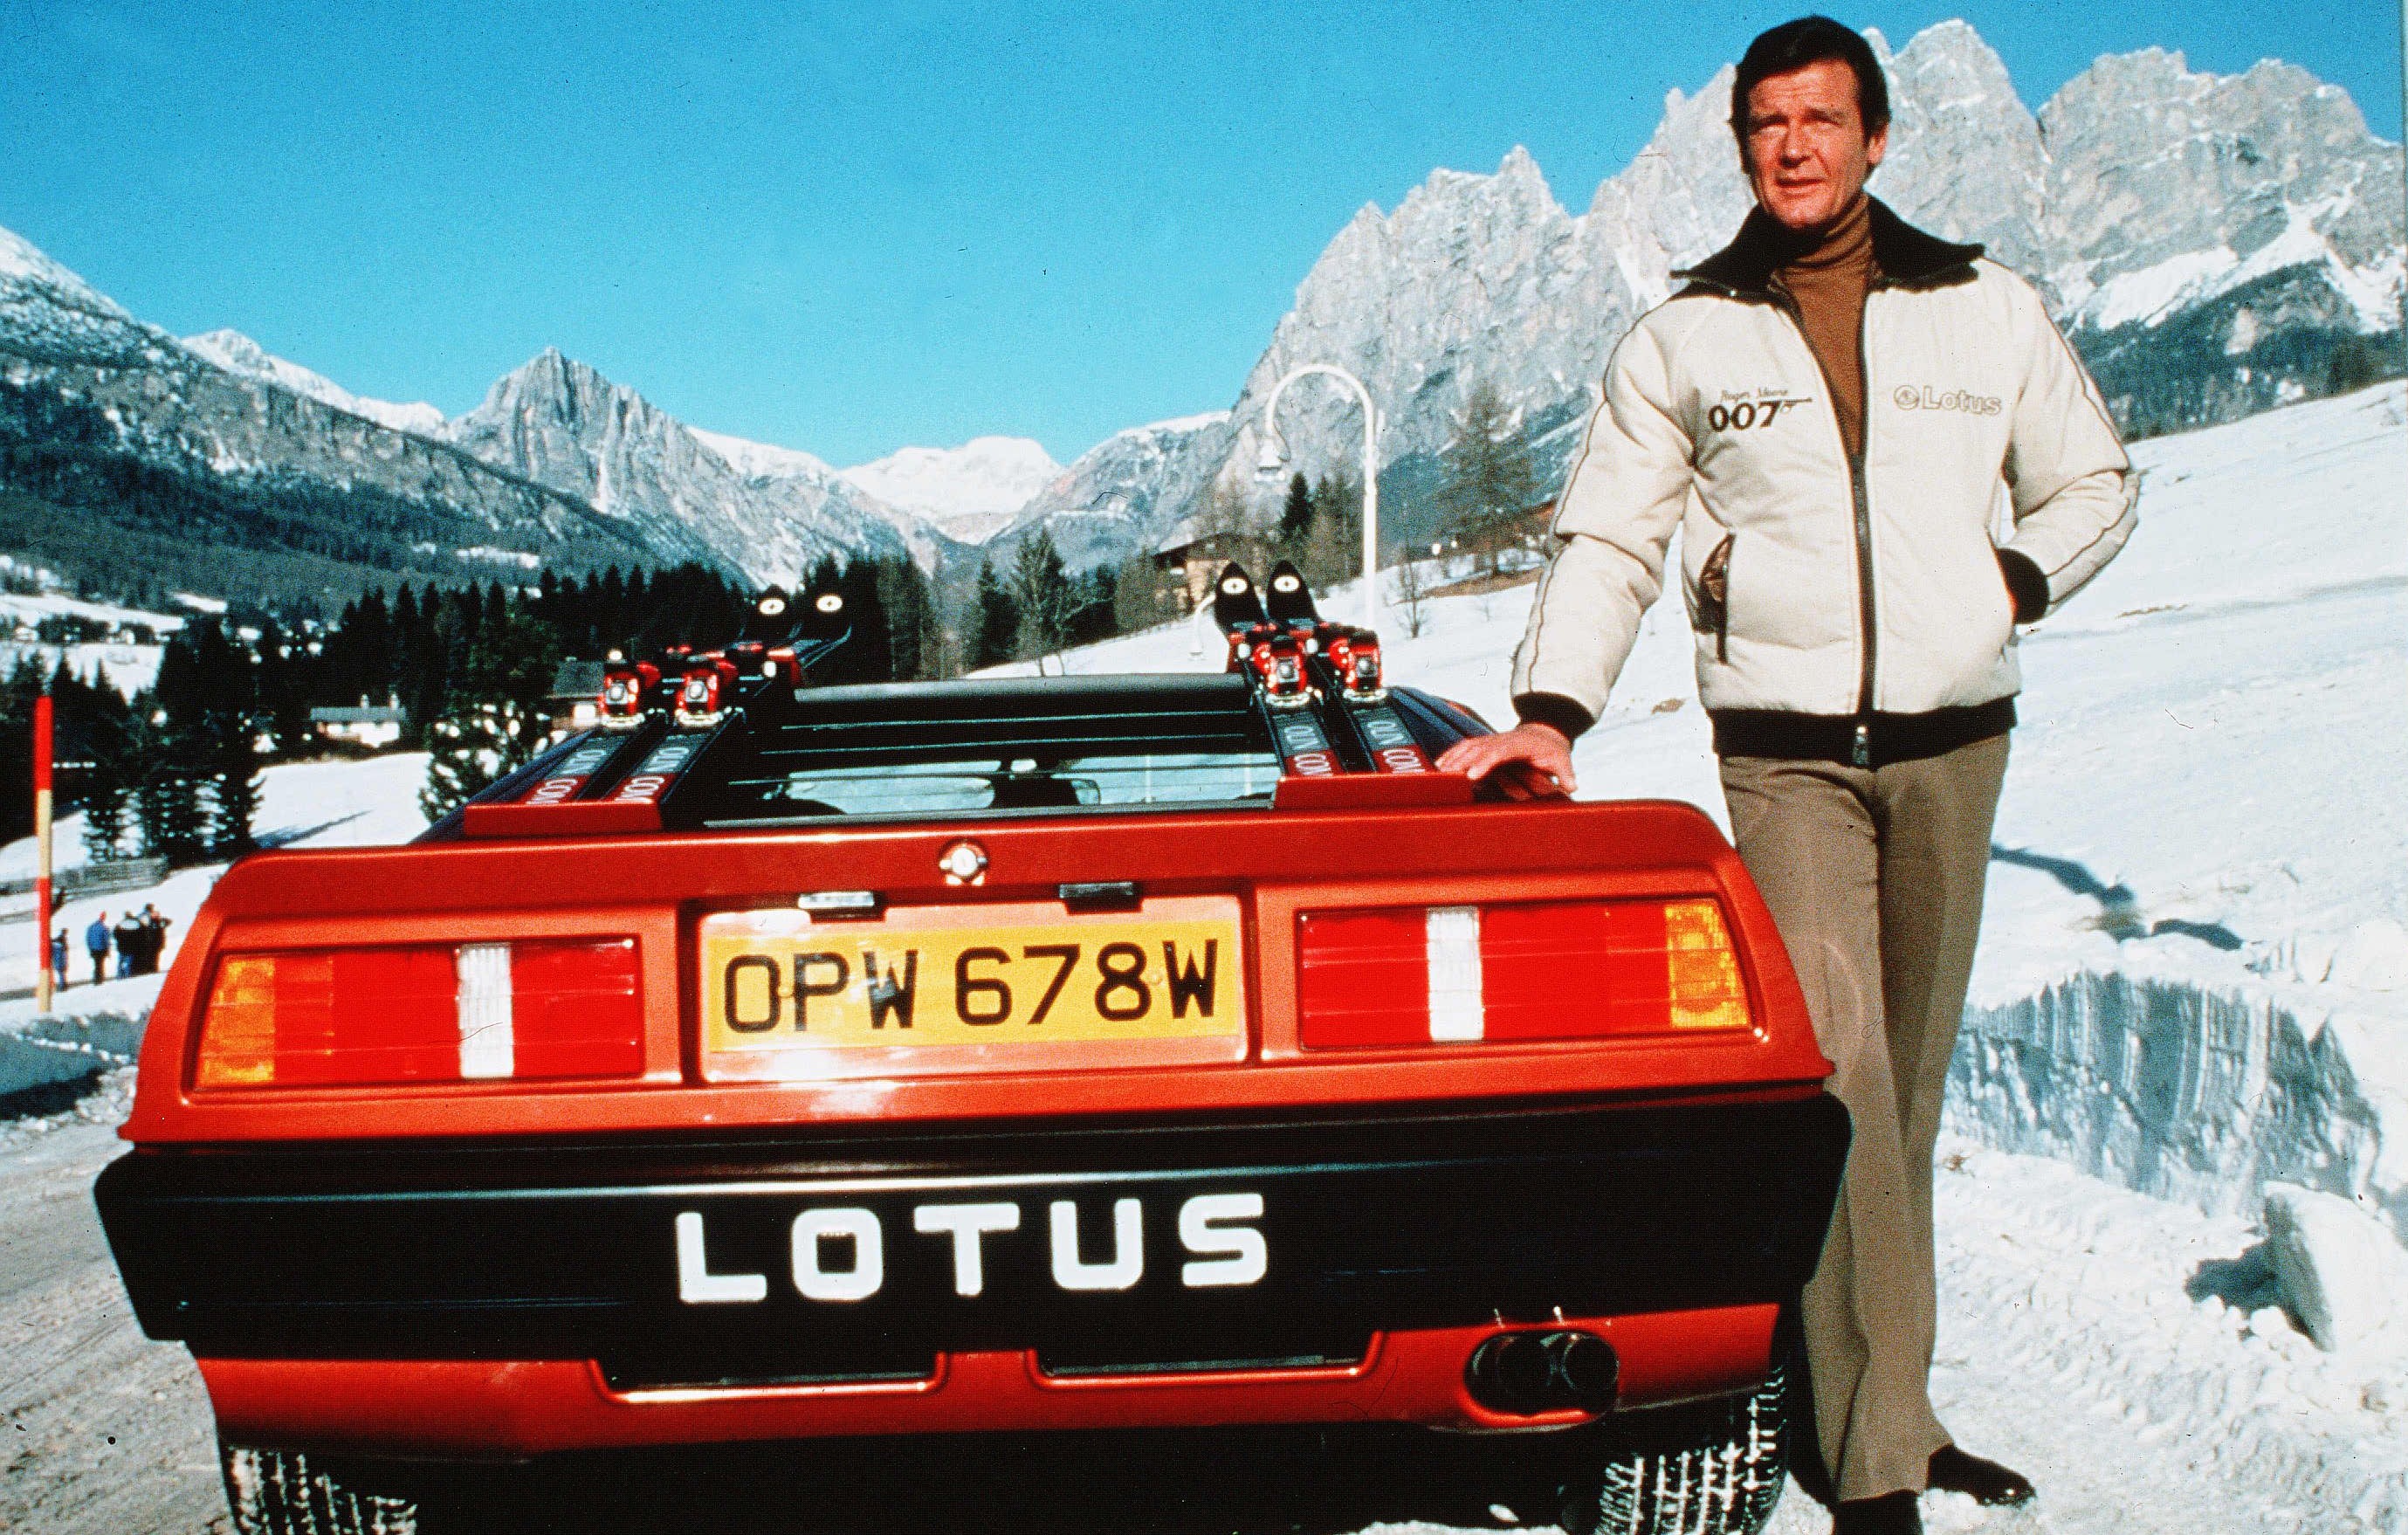 Das Auto ist ein Lotus Esprit im James-Bond-Stil, hier ist es mit dem ehemaligen Bond-Darsteller Roger Moore abgebildet